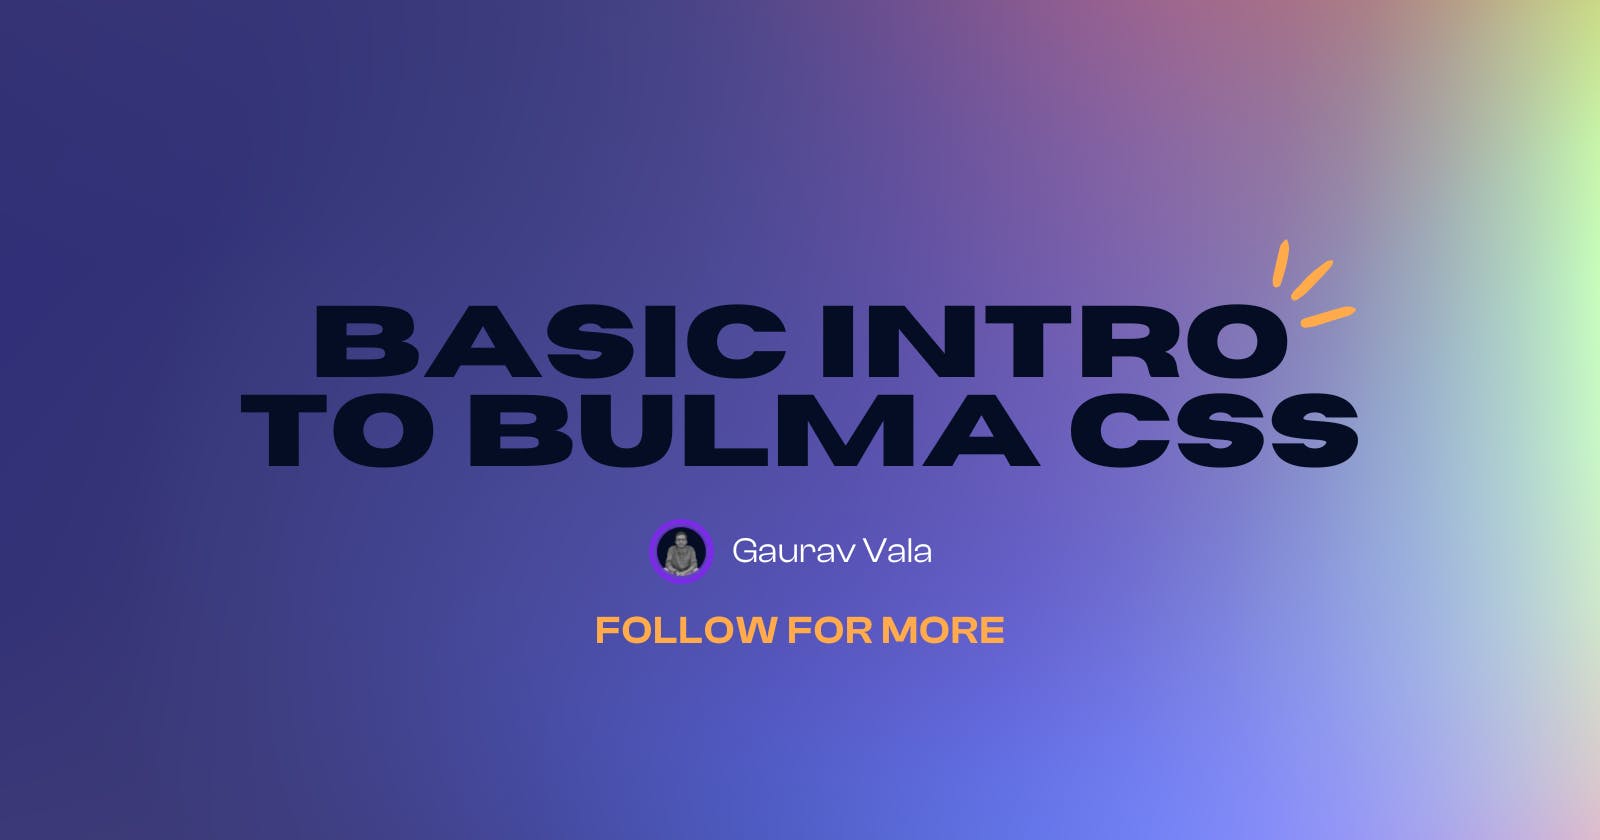 Basic Intro to Bulma CSS